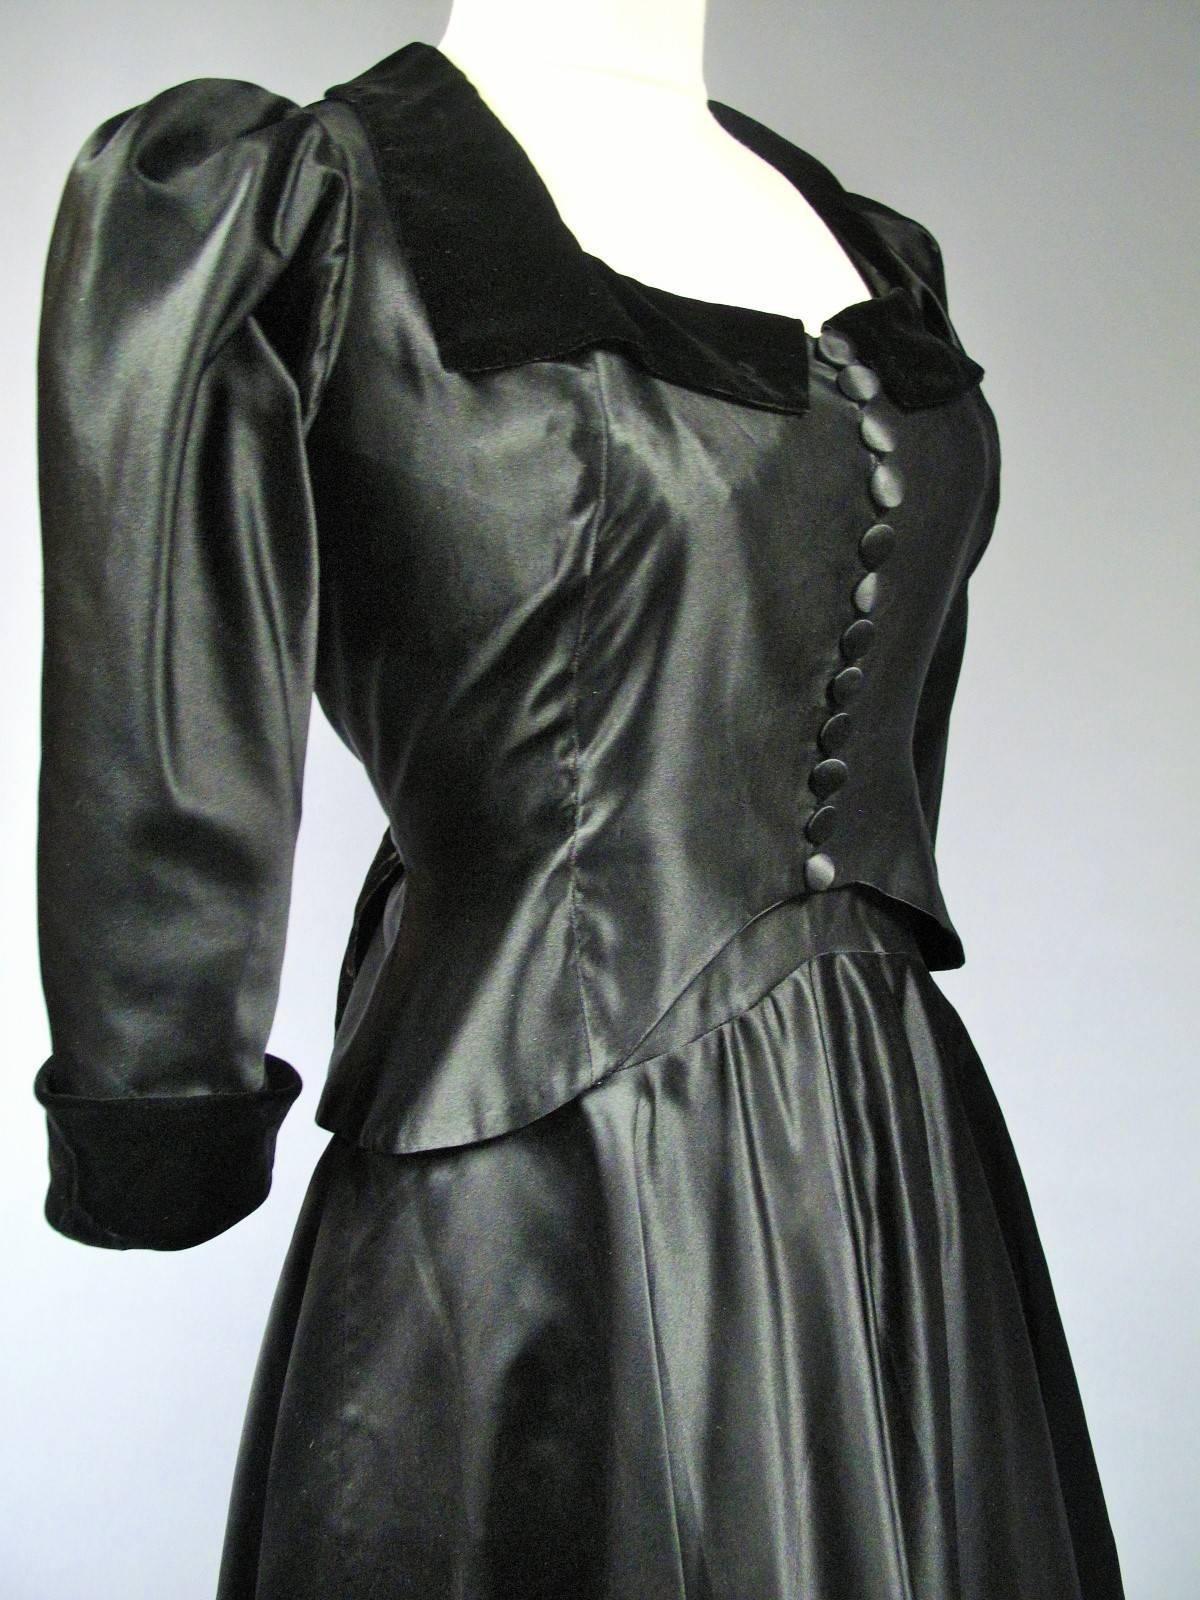 Circa 1935
France Haute Couture
Robe de soirée Haute Couture Maggy Rouff en satin et velours noir de 1935. Veste à col rond, col et revers de manches en velours noir, manches bouffantes et douze boutons sur le devant. Le corsage se resserre avec des